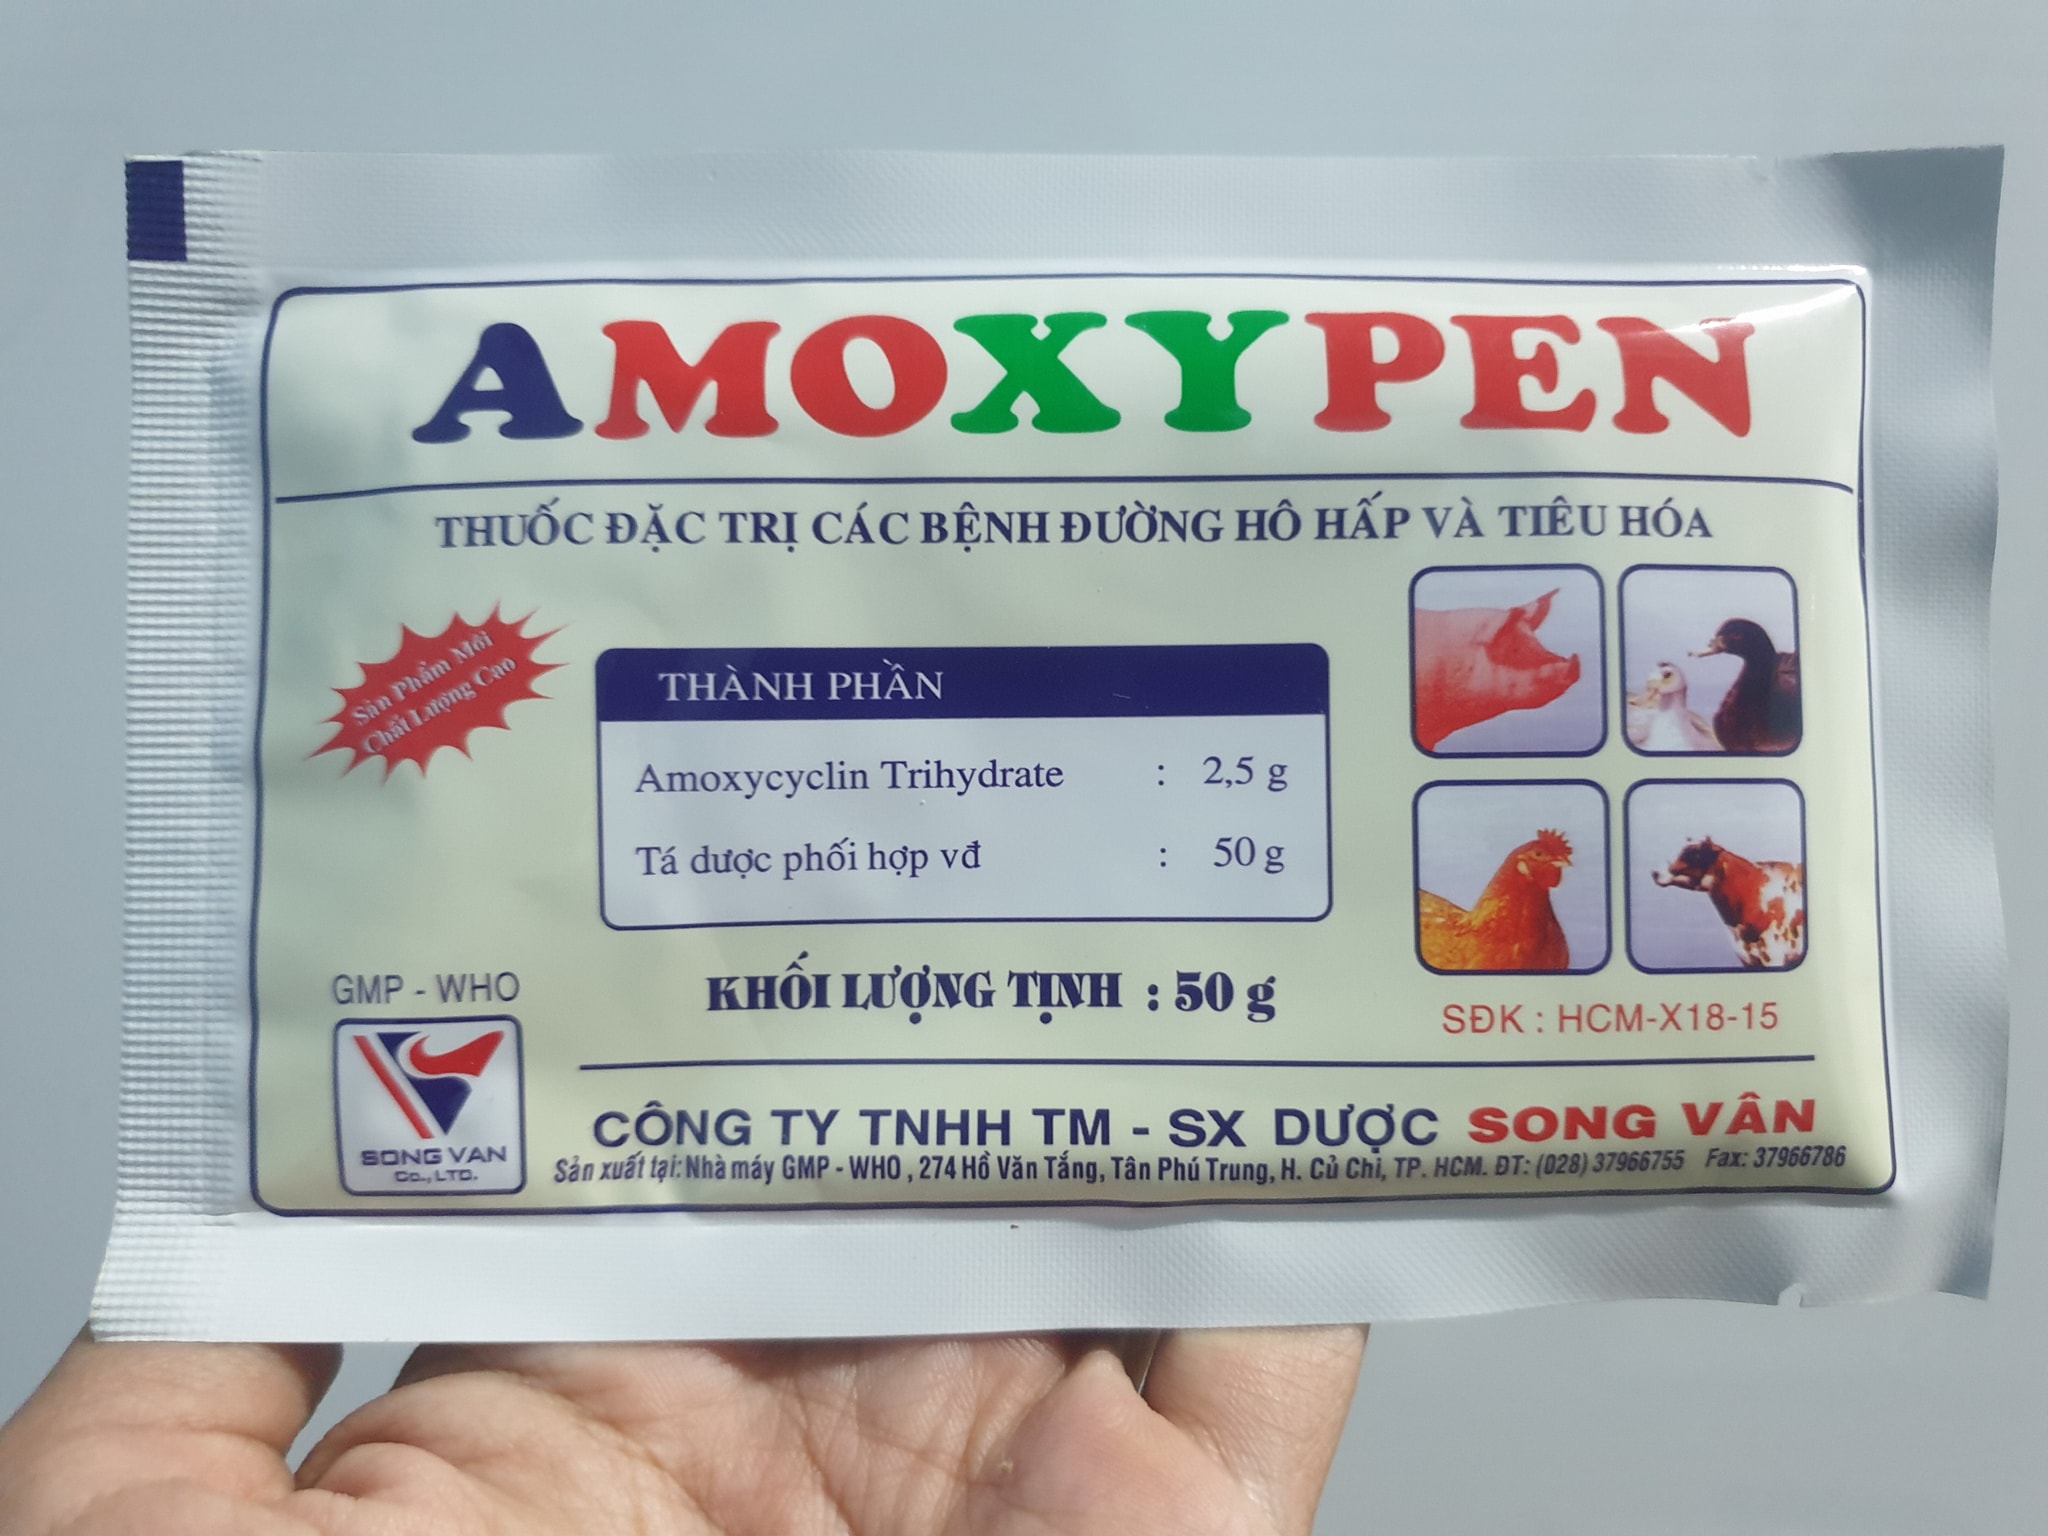 AMOXYPEN gói 50g song vân chỉ dùng trong thú y